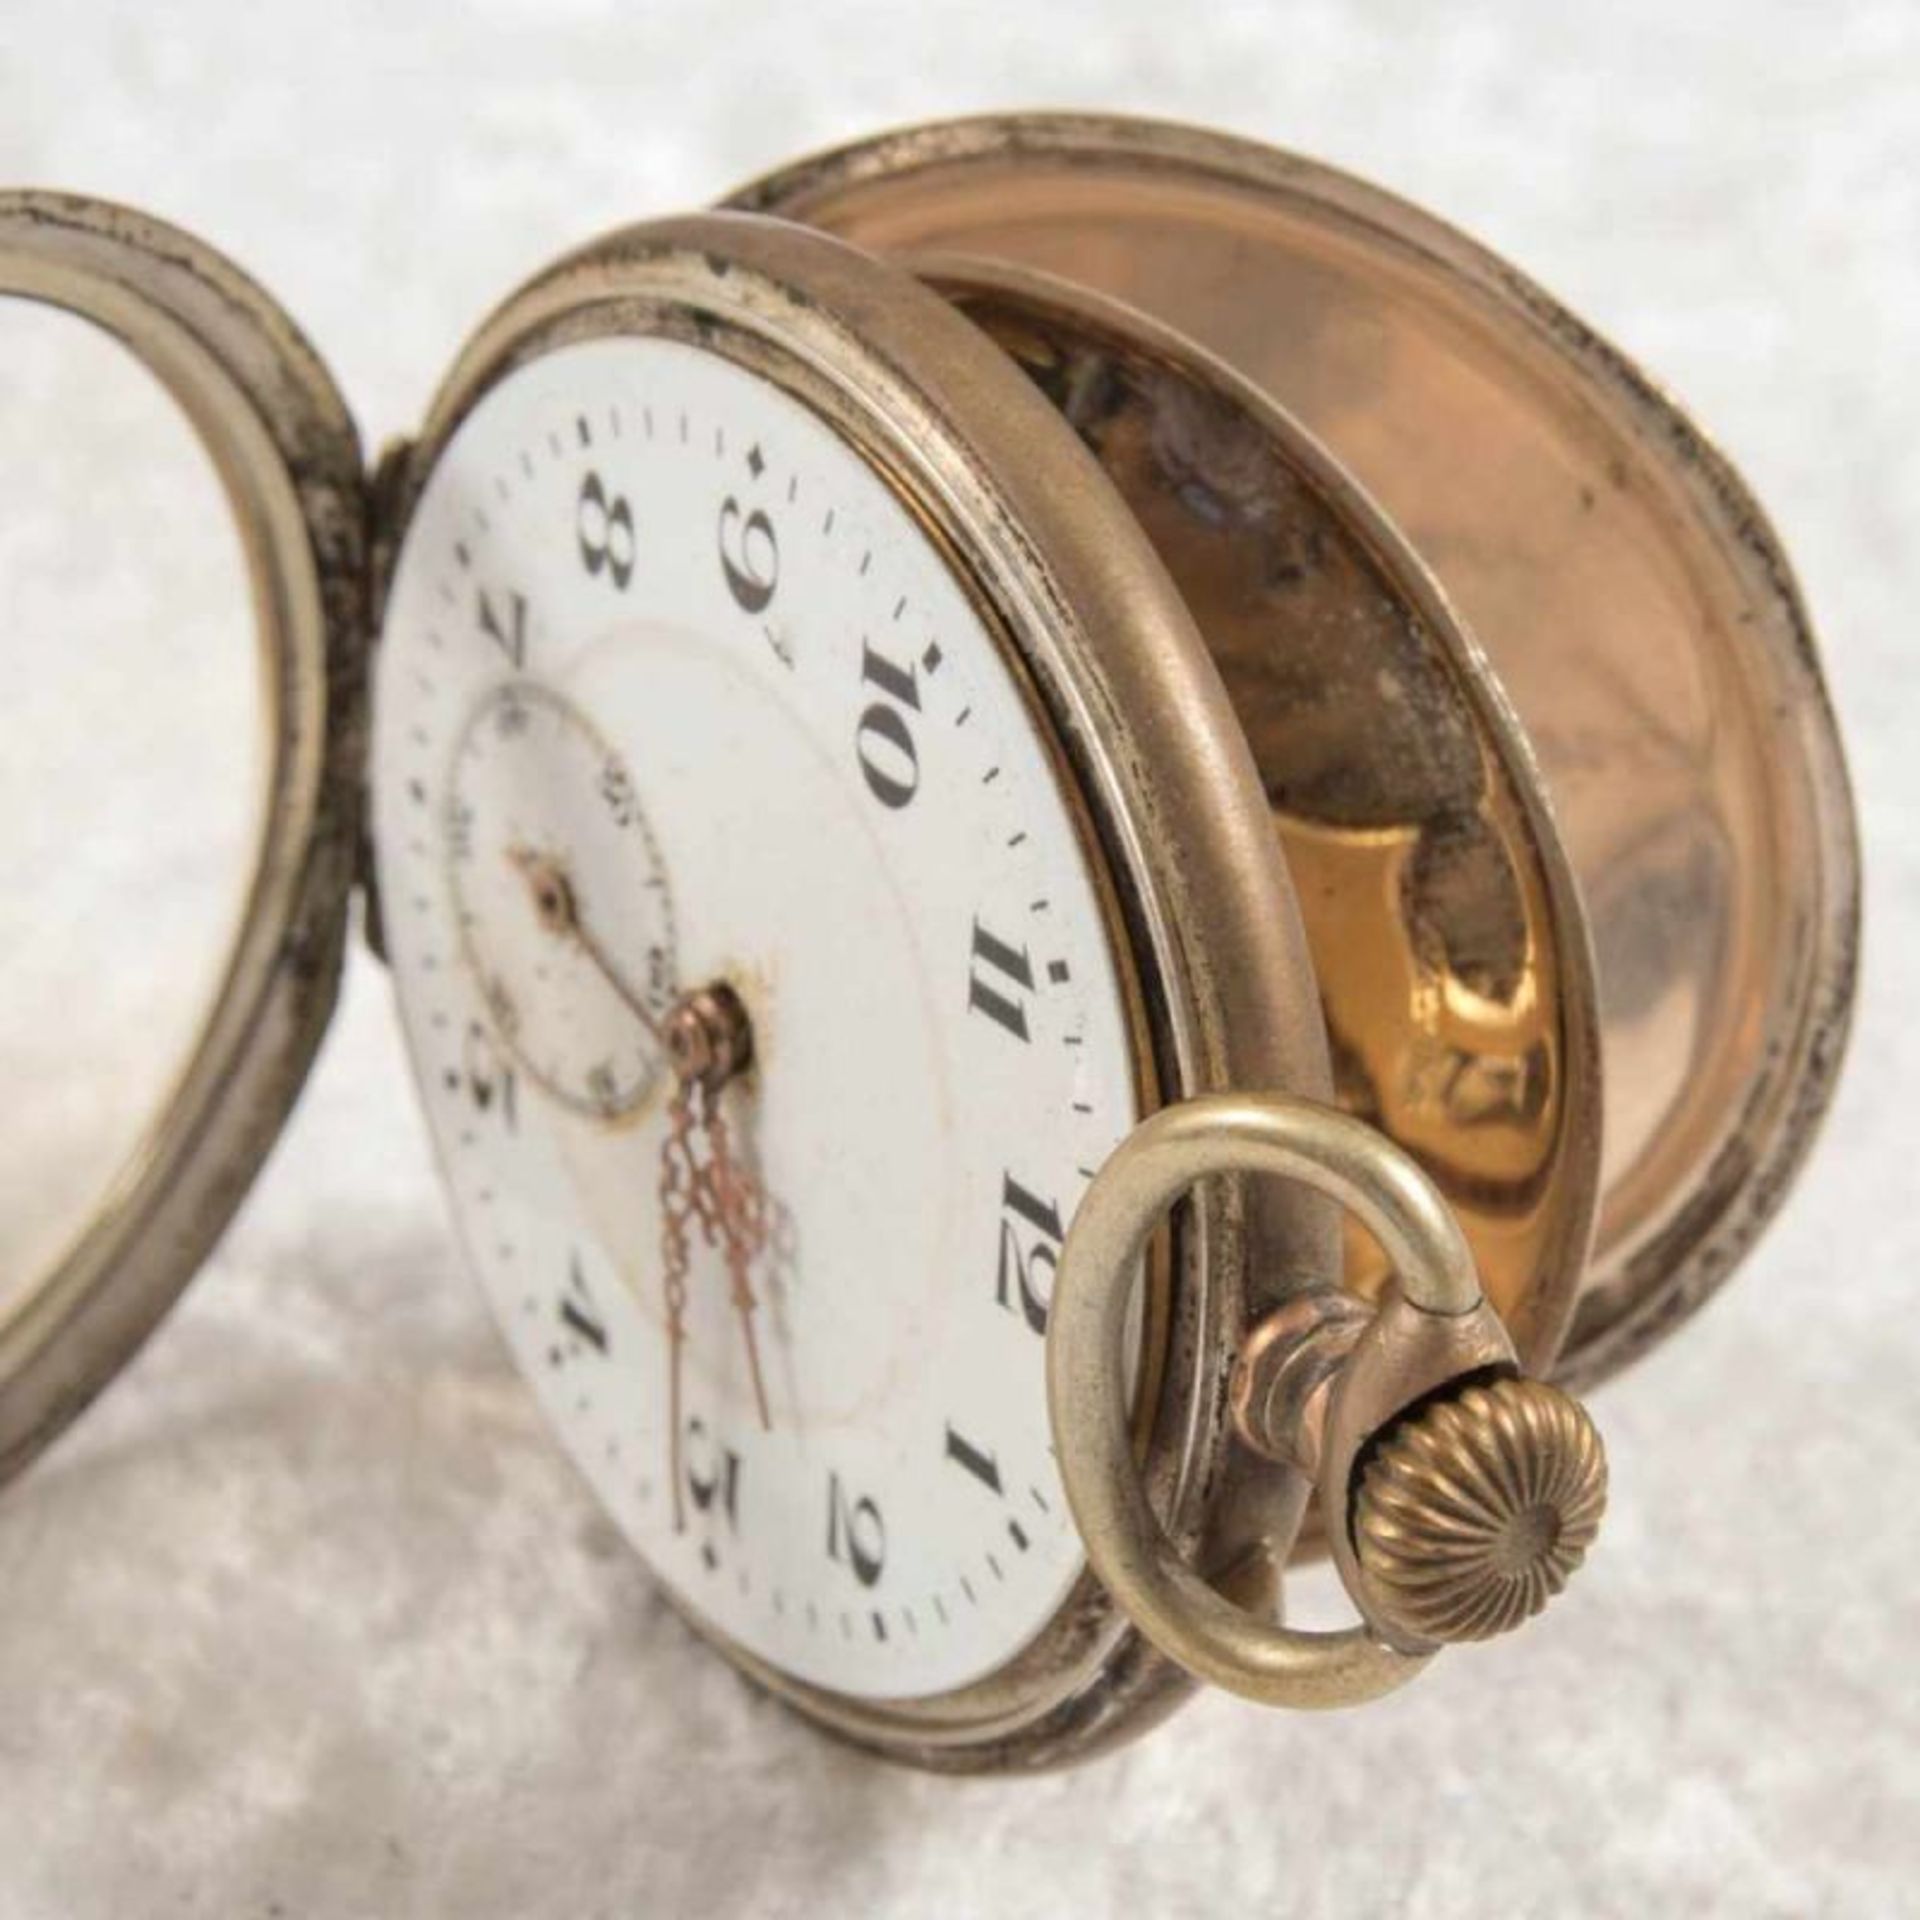 2 alte/antike Taschenuhren. Silbergehäuse, ungeprüft. - Bild 14 aus 20